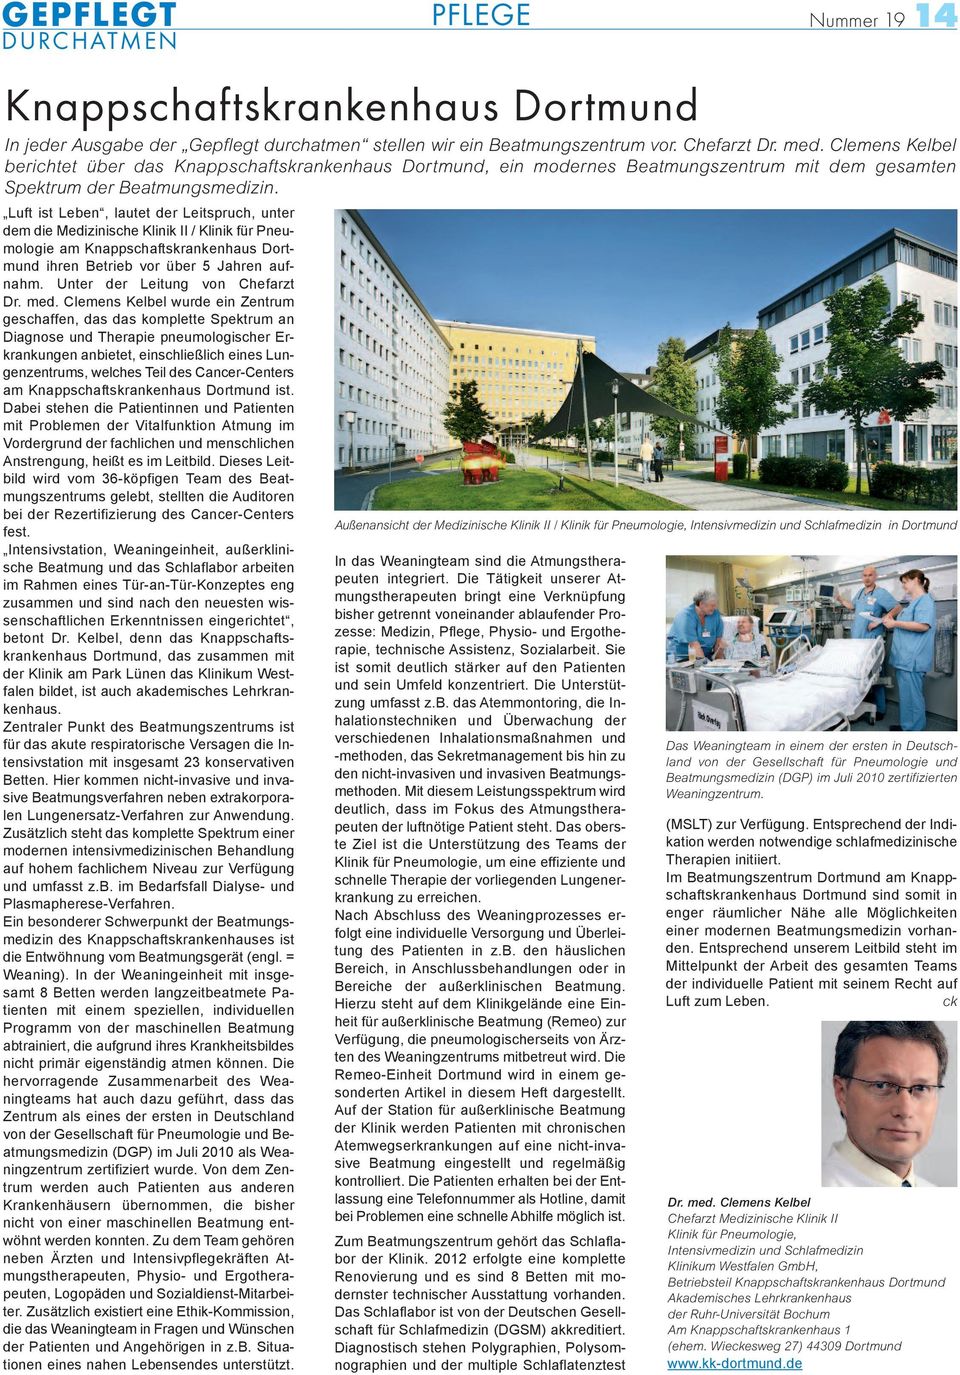 Luft ist Leben, lautet der Leitspruch, unter dem die Medizinische Klinik II / Klinik für Pneumologie am Knappschaftskrankenhaus Dortmund ihren Betrieb vor über 5 Jahren aufnahm.